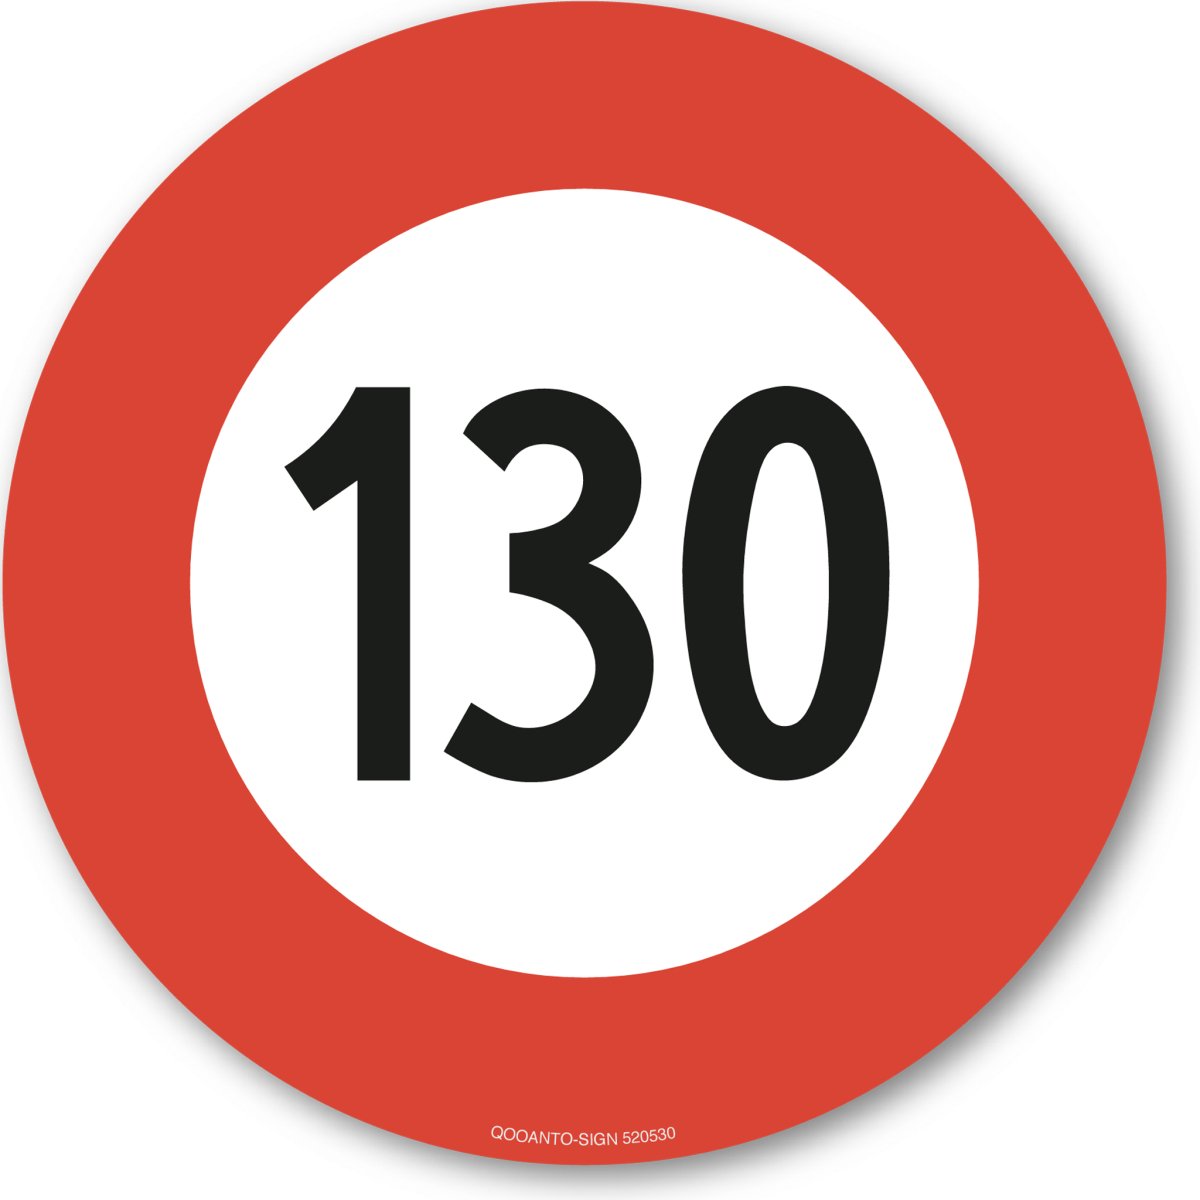 130 Höchstgeschwindigkeit Verkehrsschild oder Aufkleber aus Alu-Verbund oder Selbstklebefolie mit UV-Schutz - QOOANTO-SIGN